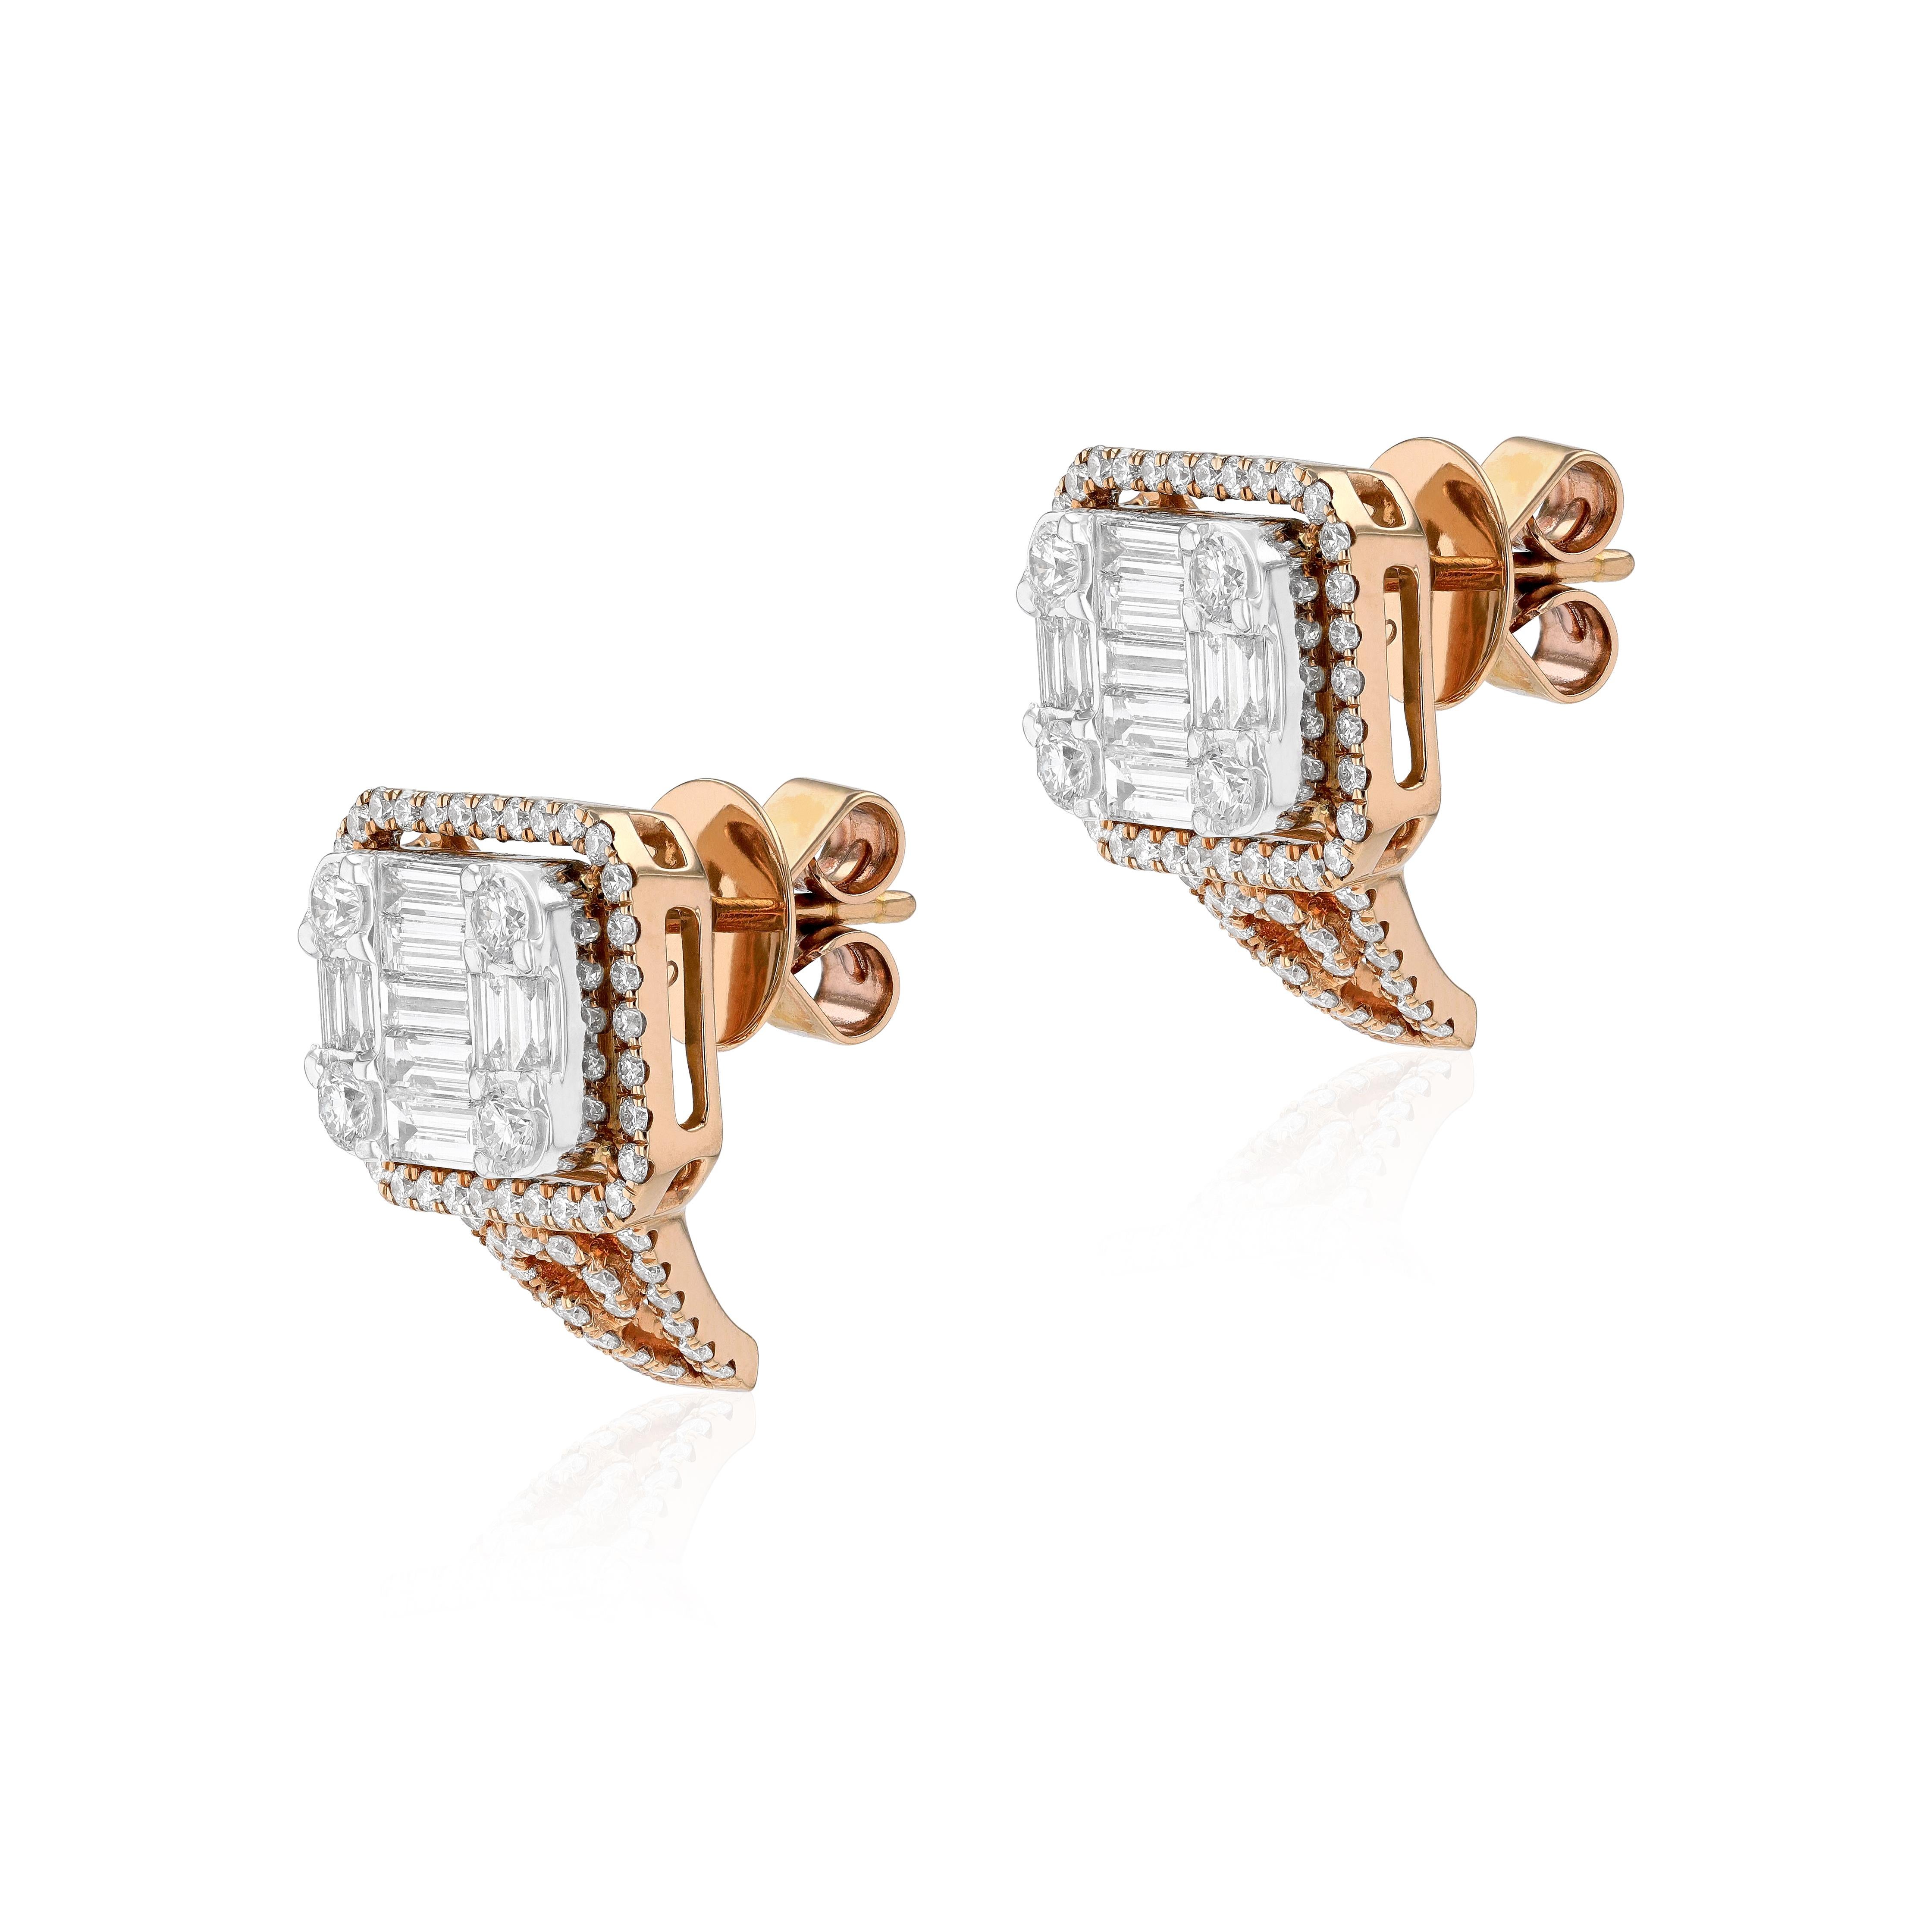 Boucles d'oreilles uniques et artistiques en or rose 18 carats de la marque Amwaj avec diamants ronds et baguettes. Ces boucles d'oreilles sont une pièce emblématique d'un clin d'œil au goût raffiné. La pierre centrale entourée d'un halo de diamants